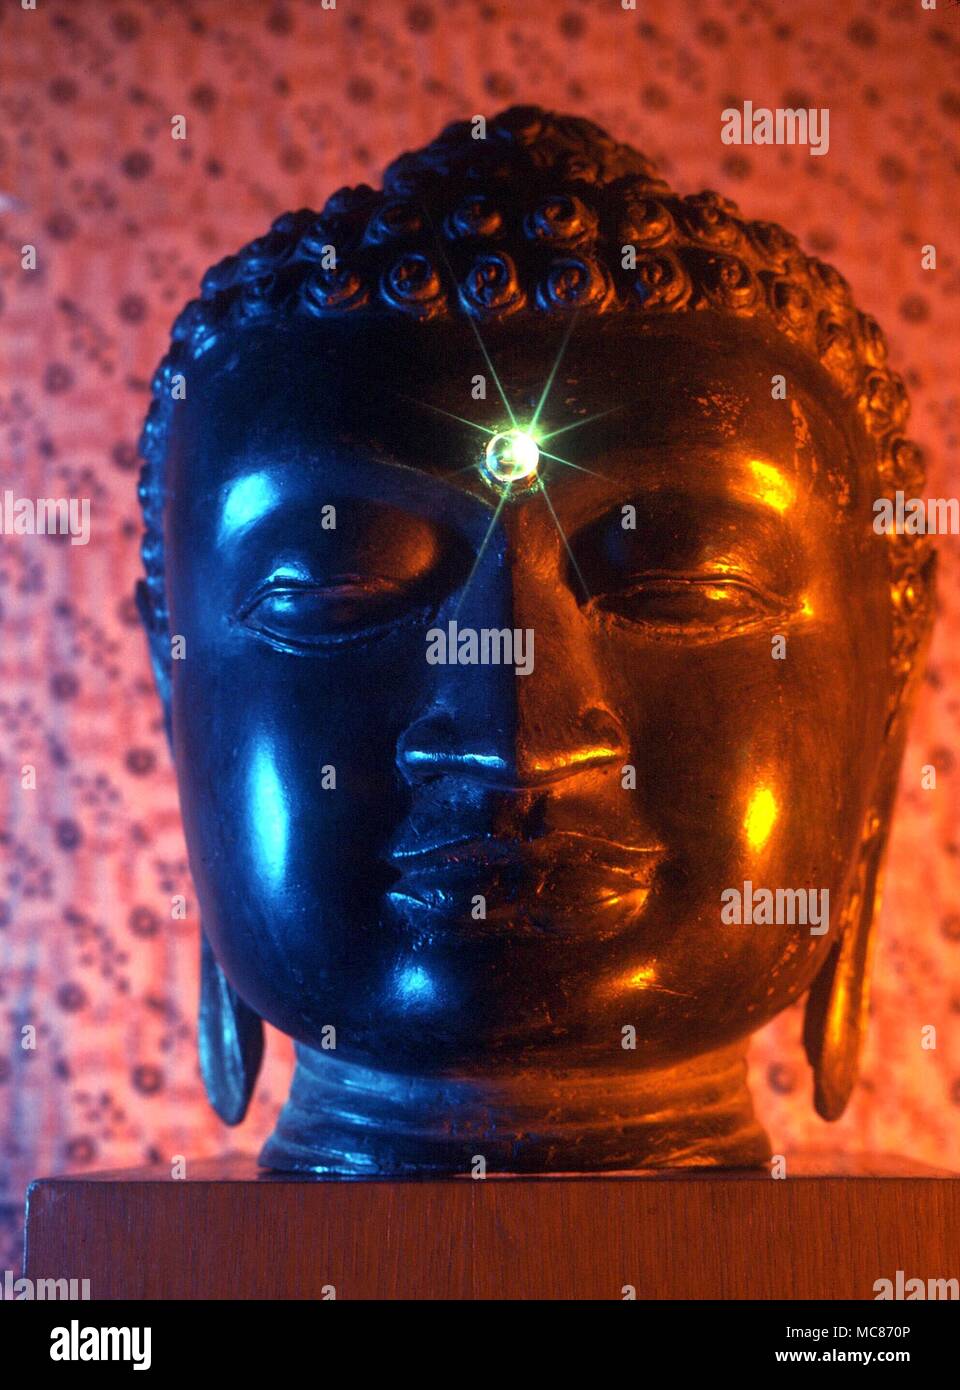 Drittes Auge - Das dekorative Element zwischen die Augen von vielen  östlichen Statuen der Götter, himmlische Wesen und (hier) Buddhas, das  Dritte Auge symbolisieren, die voll entwickelte Organ der clarivoyance  Stockfotografie - Alamy